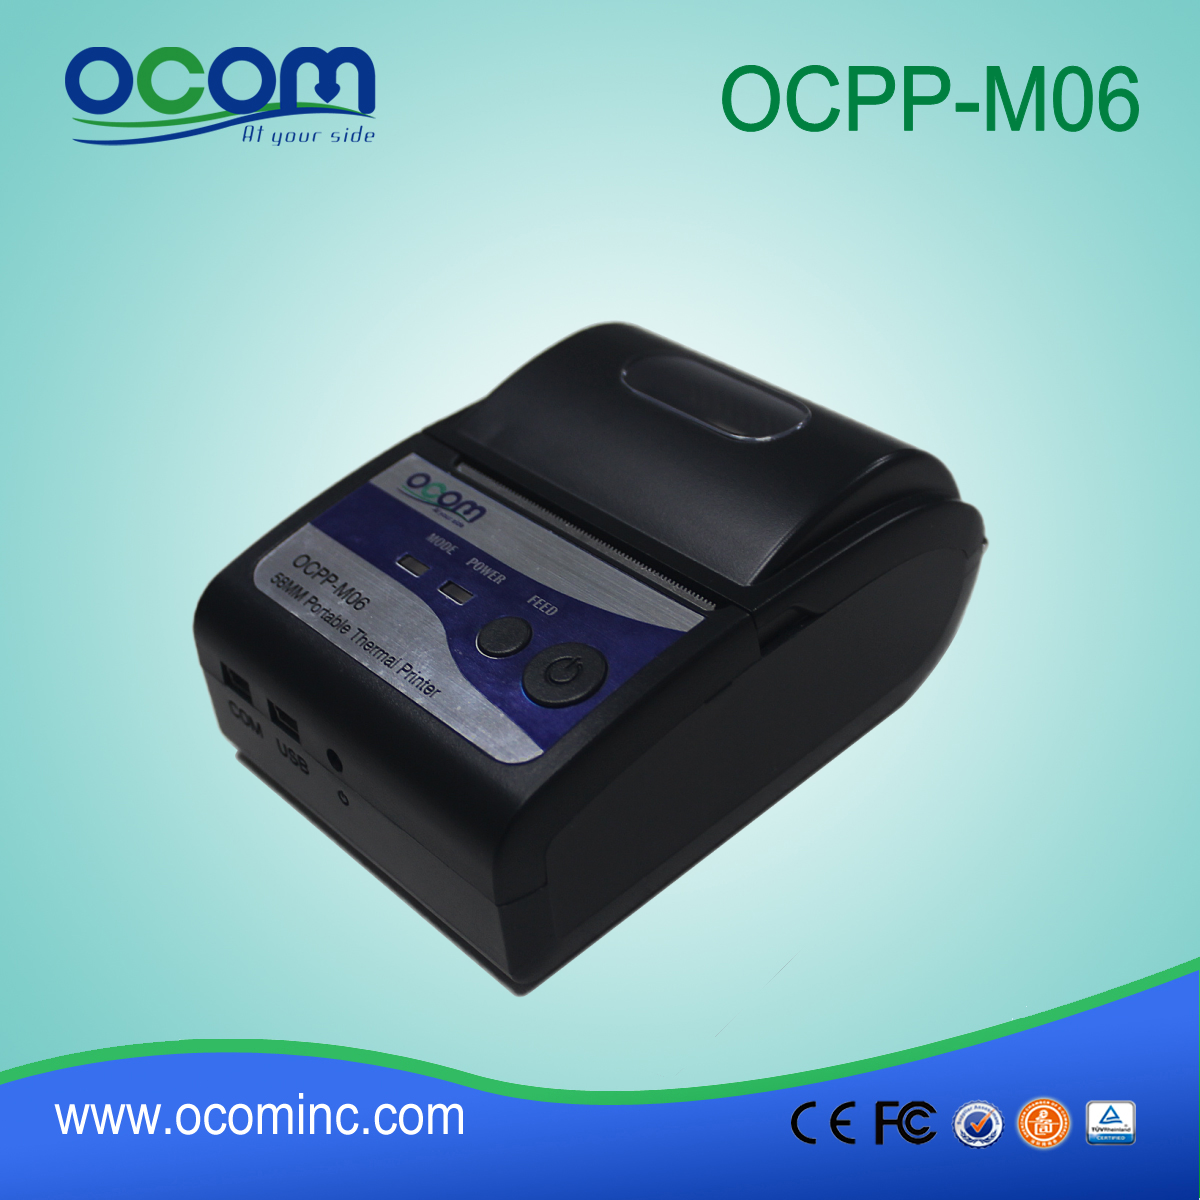 Restaurant faturamento de impressão do aparelho pos com preço barato (OCPP-M06)